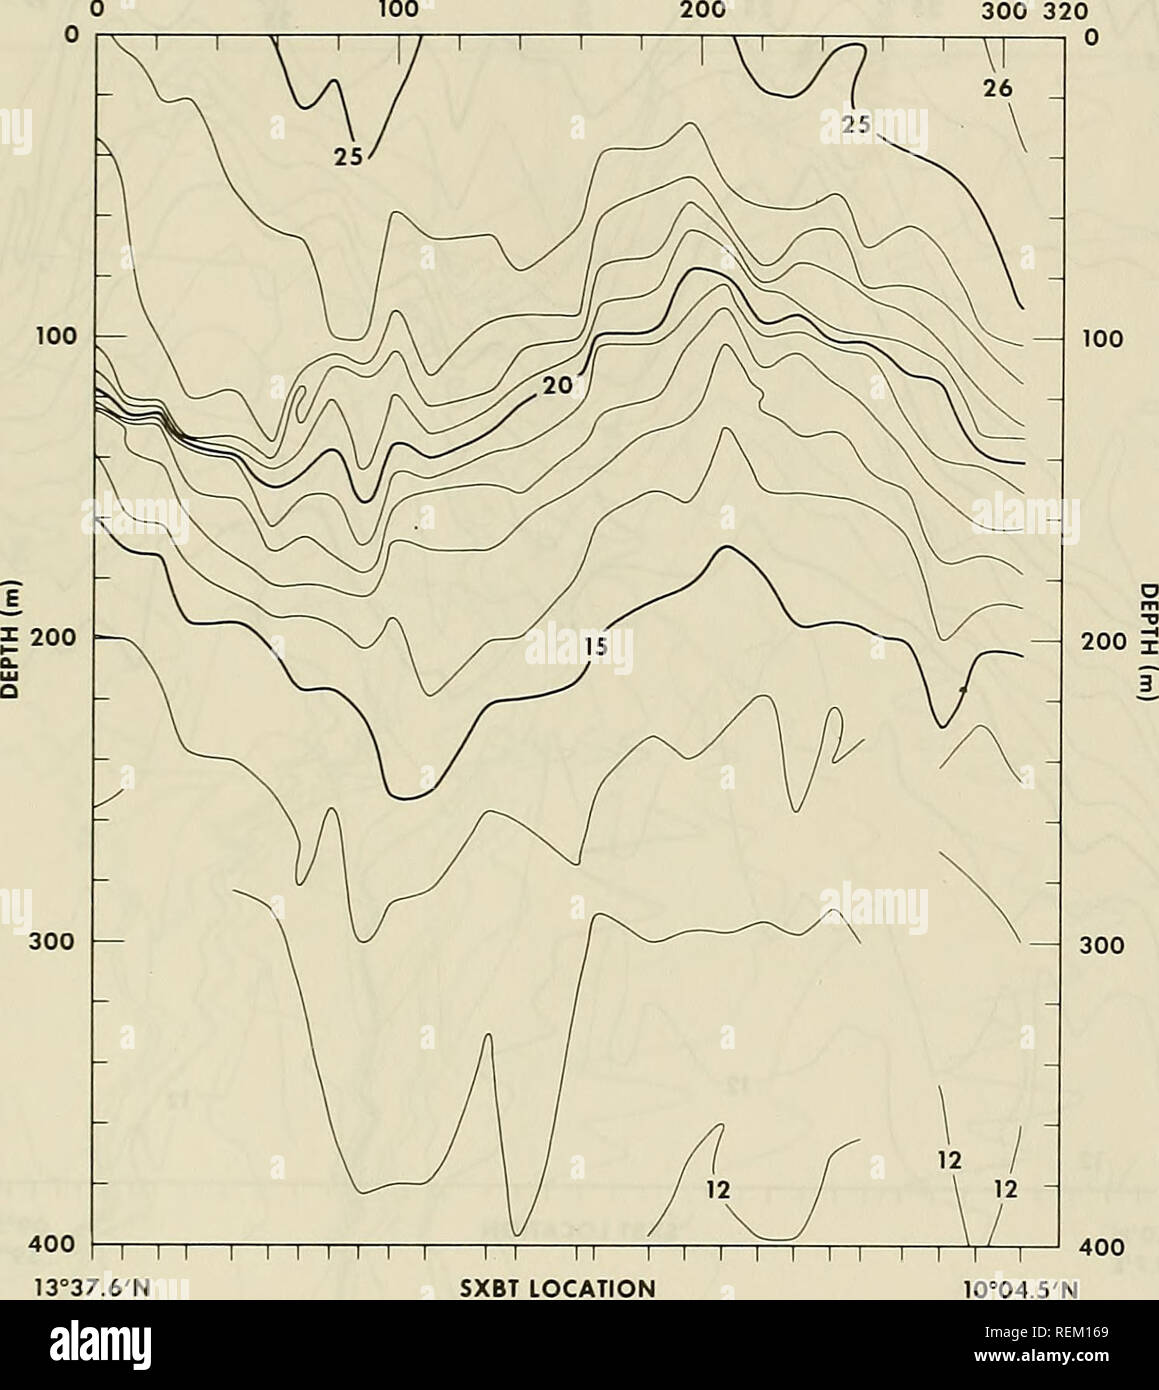 . La circulation et les propriétés océanographiques dans le bassin somalien comme pendant la mousson du sud-ouest 1979. Courants océaniques ; océanographie ; les moussons. La distance (NMI) 100 200. 400 t-I-|-1-1 I I I I 13°37,6' de la Figure 13. La température de l'XBT ("C) l'article 8, 30 - 31 août 1979 (voir la figure 5) 37. Veuillez noter que ces images sont extraites de la page numérisée des images qui peuvent avoir été retouchées numériquement pour plus de lisibilité - coloration et l'aspect de ces illustrations ne peut pas parfaitement ressembler à l'œuvre originale.. Beatty, William H ; Bruce, John G ; Guthrie, Robert C, United States. L'océanographique de la marine Banque D'Images